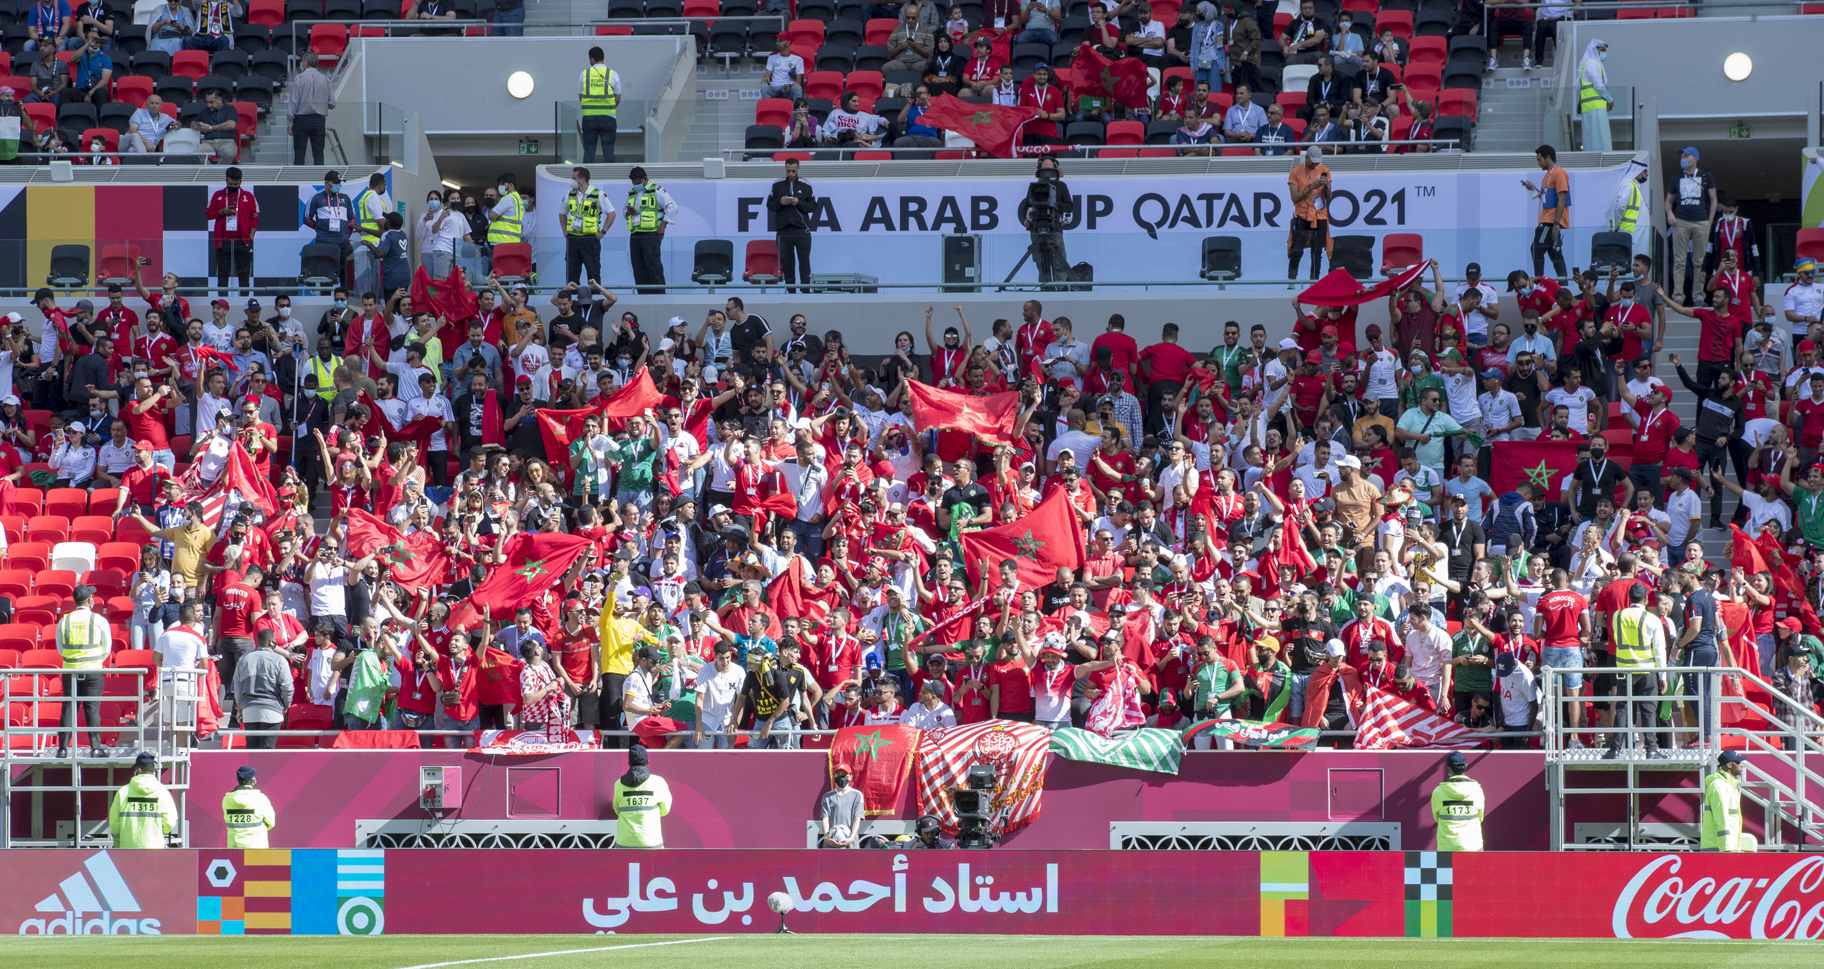 بالصور.. اللجنة المنظمة لكأس العرب تكافئ مرة أخرى الجماهير المغربية